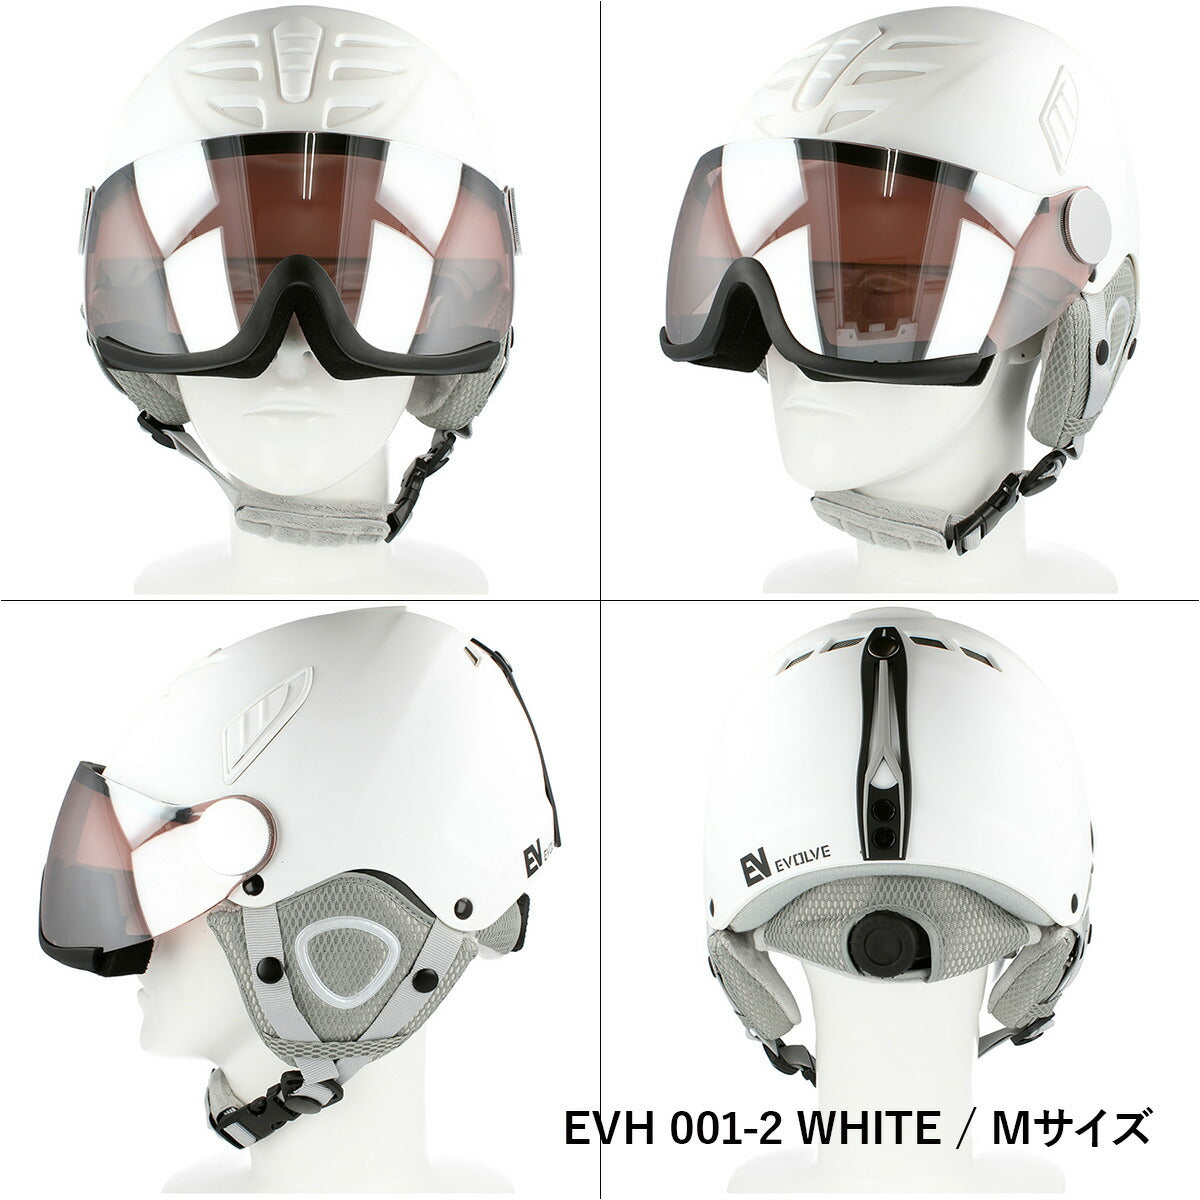 イヴァルブ ヘルメット EVH 001 2サイズ / EVH 002 2サイズ メンズ レディース ユニセックス スノーボード ヘルメット スノボヘルメット スキーヘルメット バイザーヘルメット 【EVOLVE】